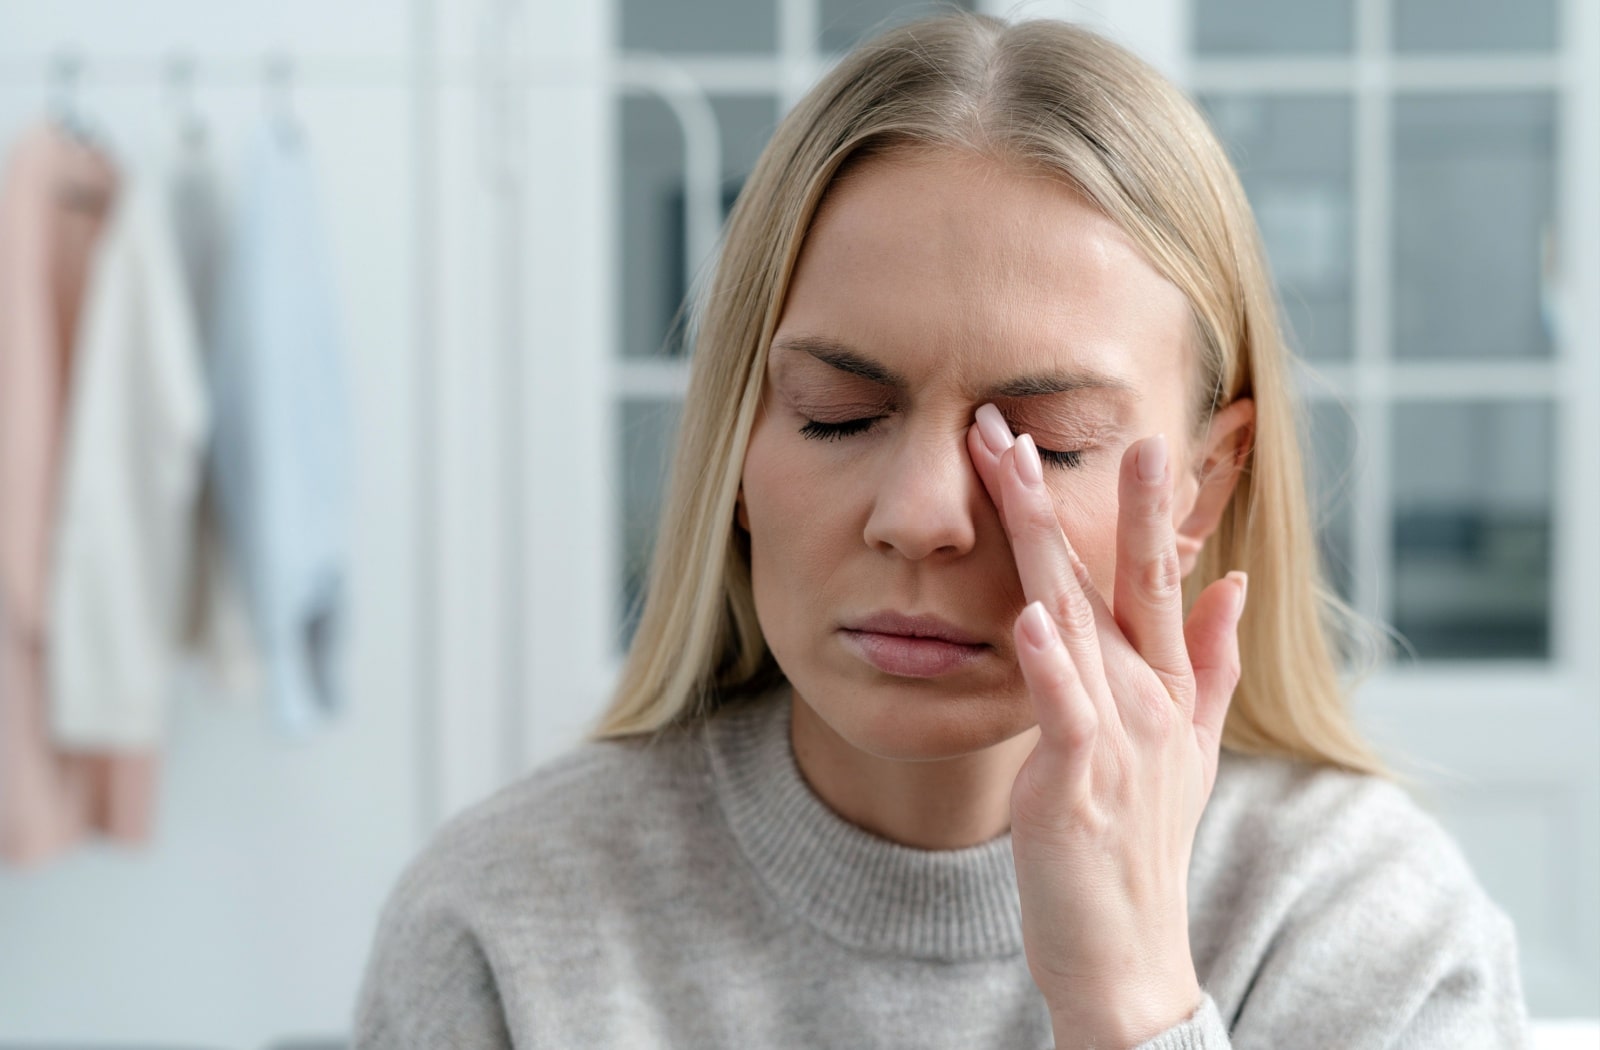 A woman rubbing her eyes due to dry eye symptoms